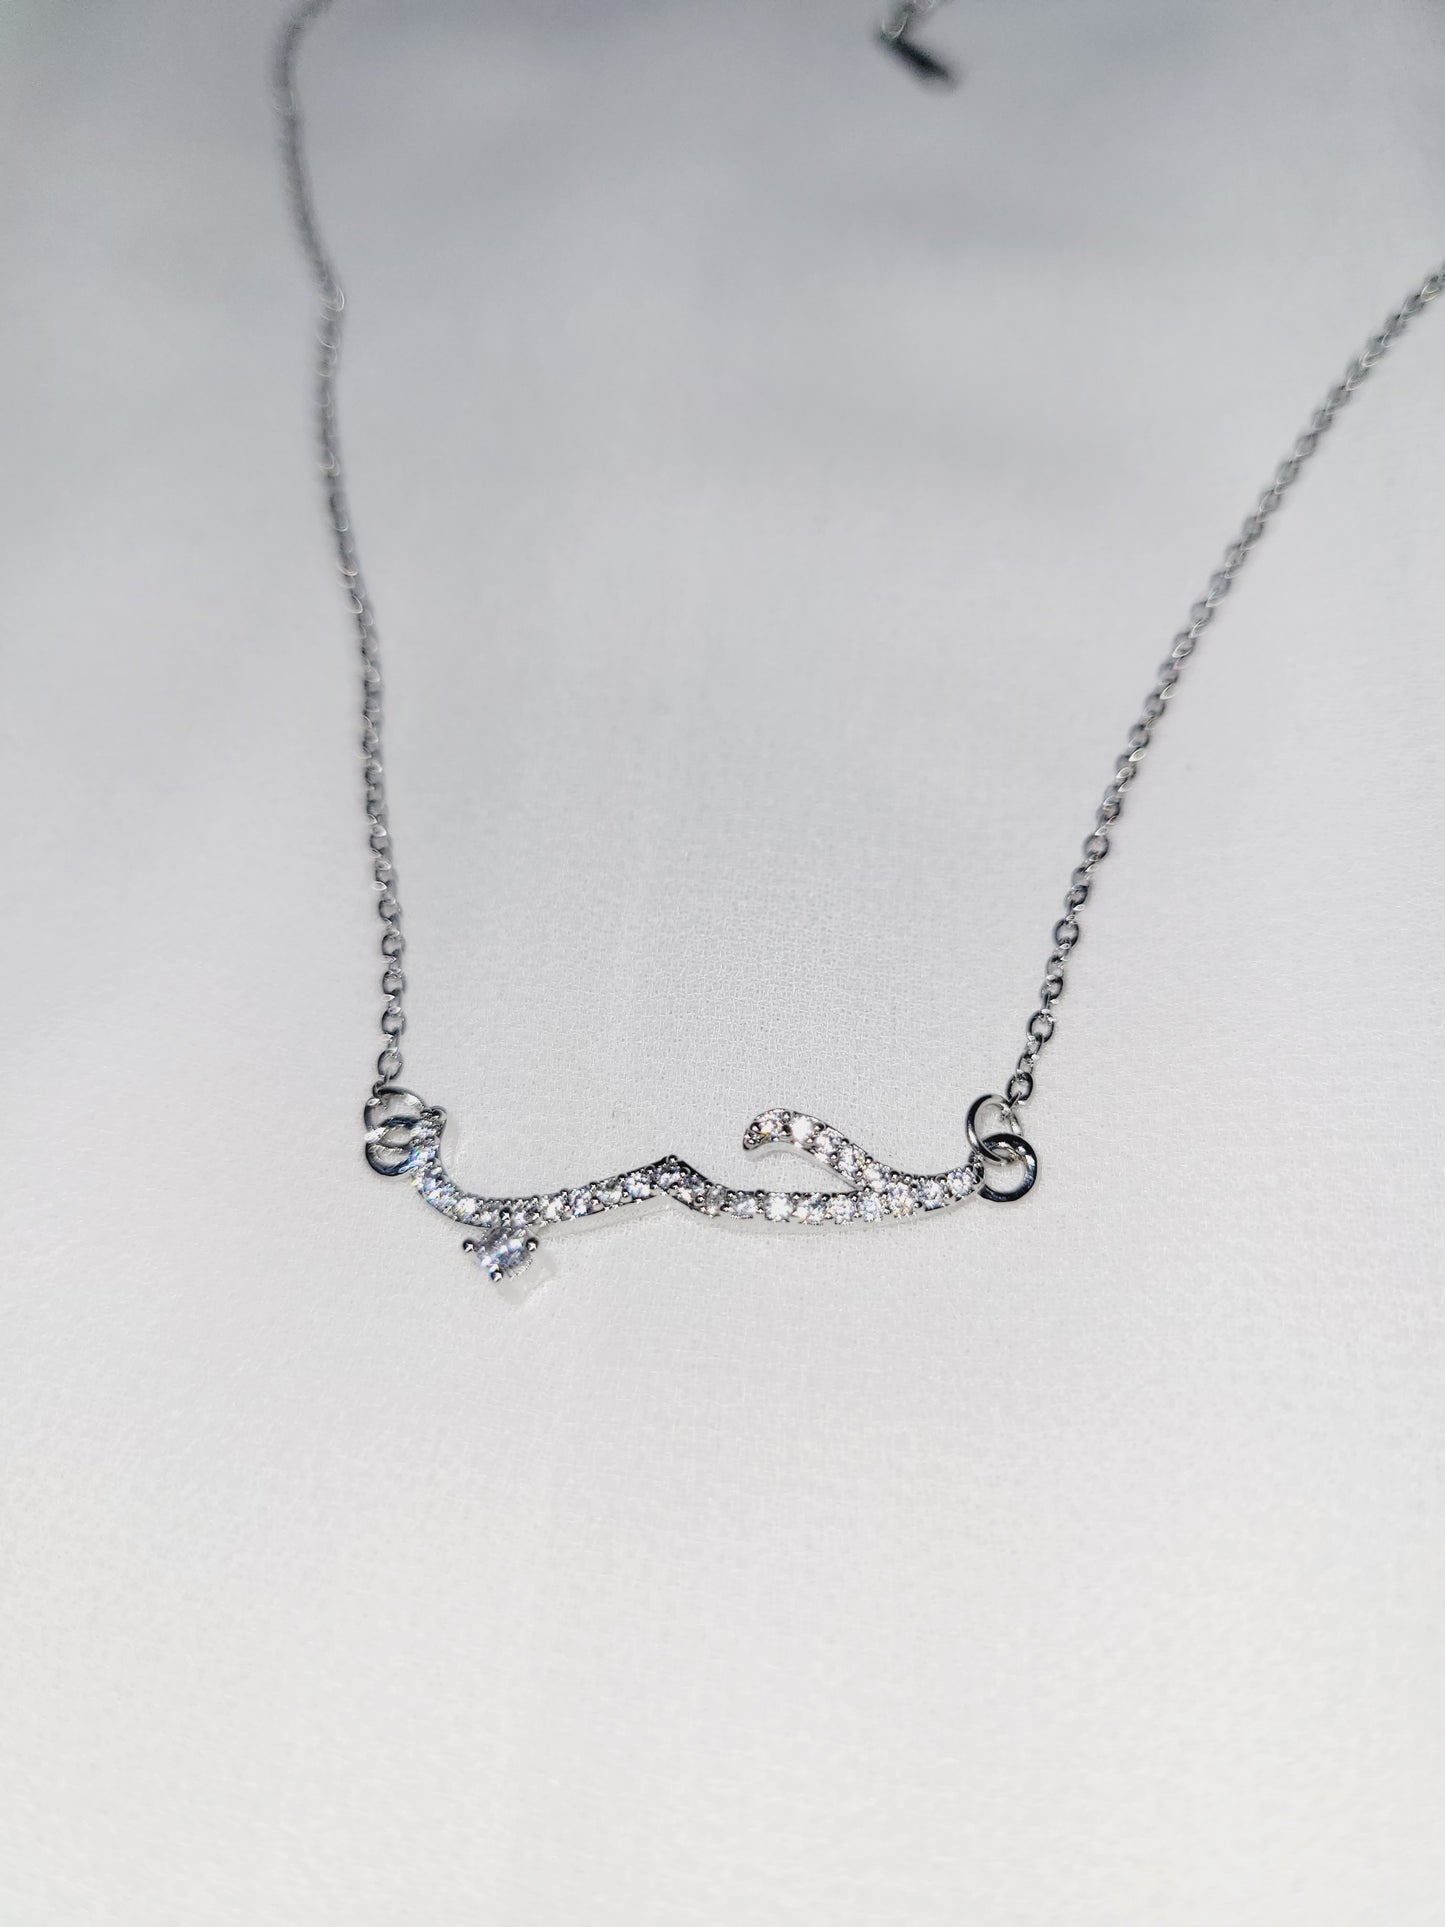 "Love" in Arabic Necklace - Silver Color ❤️